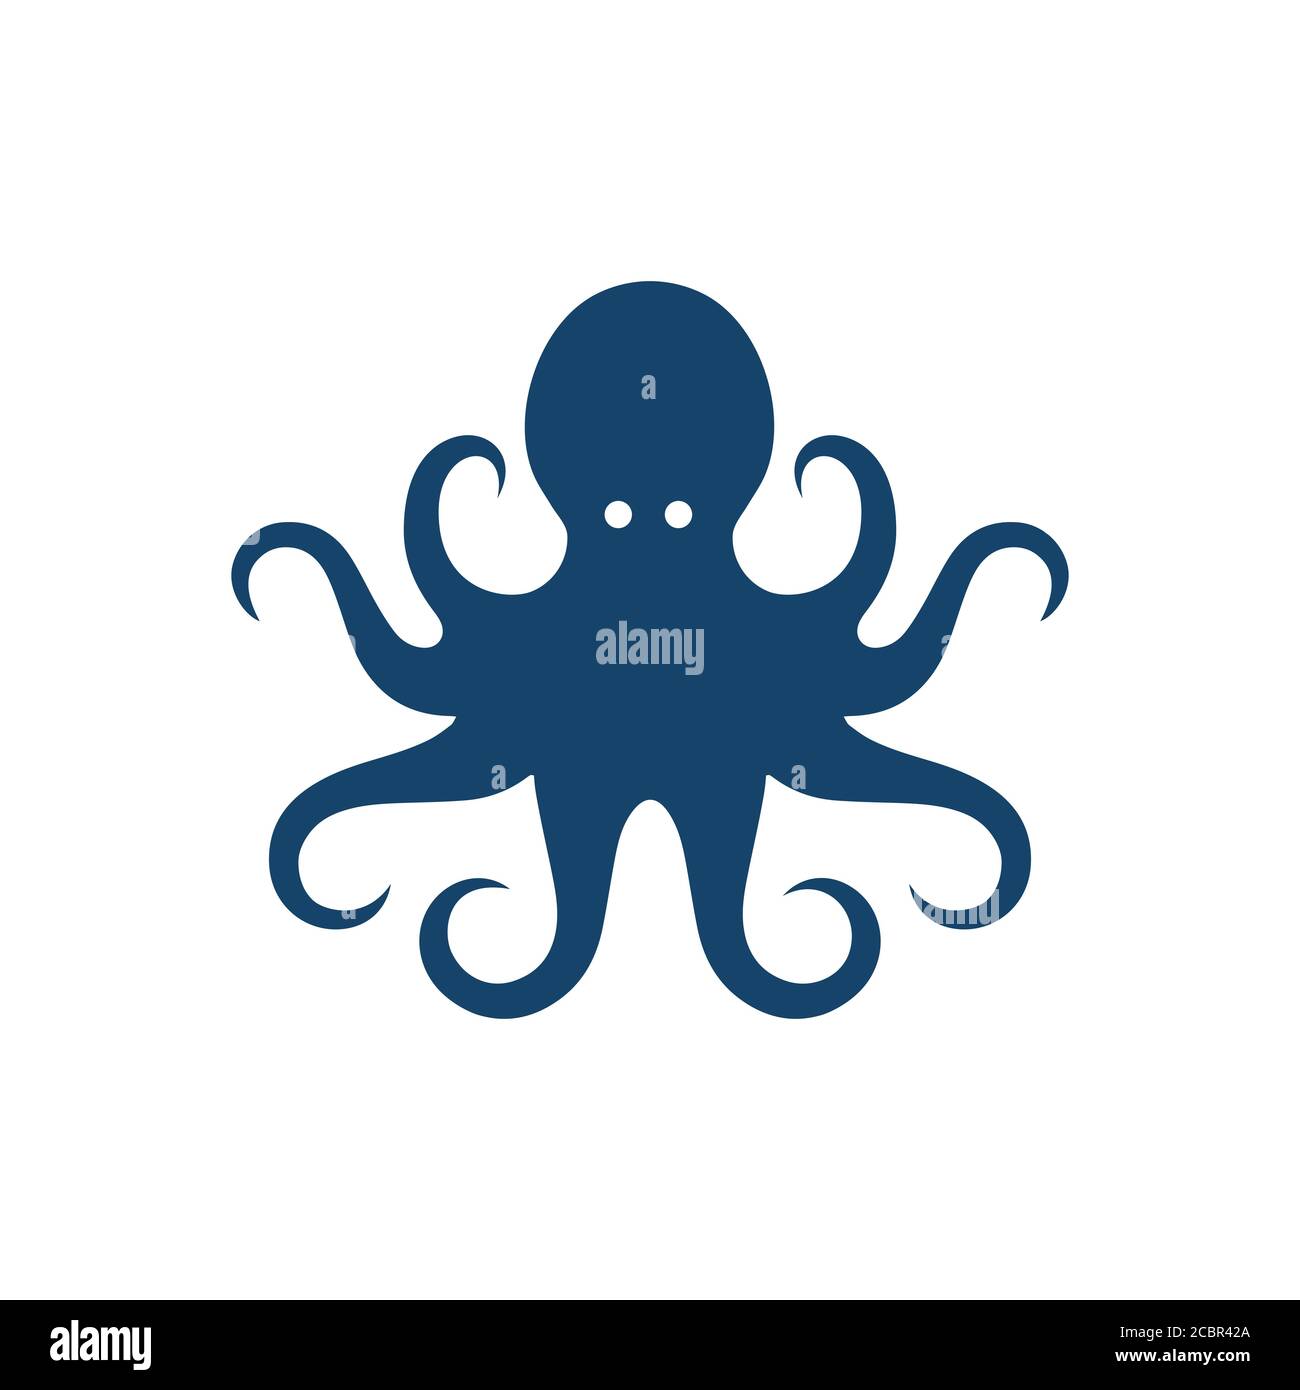 myth animal kraken octopus logo design vector illustrations Stock Vector